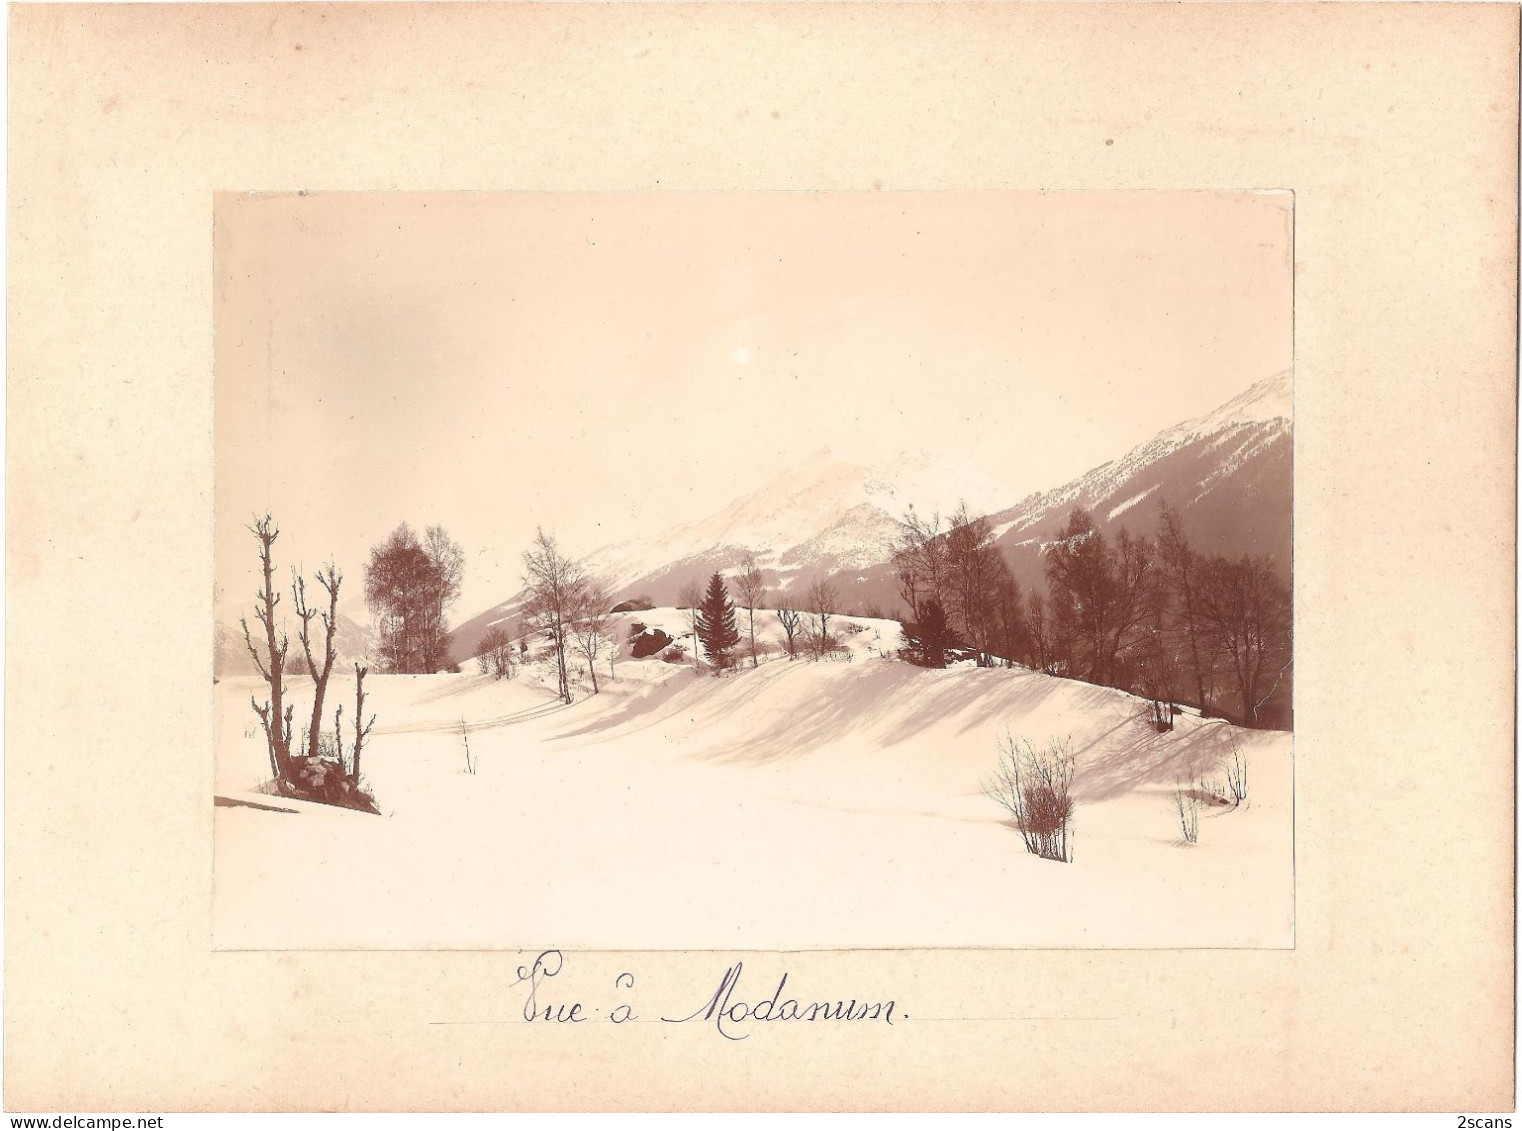 Dépt 73 - MODANE - Photographie Ancienne 11,9 X 16,9 Cm Sur Carton 17,4 X 23,7 Cm - "VUE À MODANUM" - (1911) - Photo - Modane